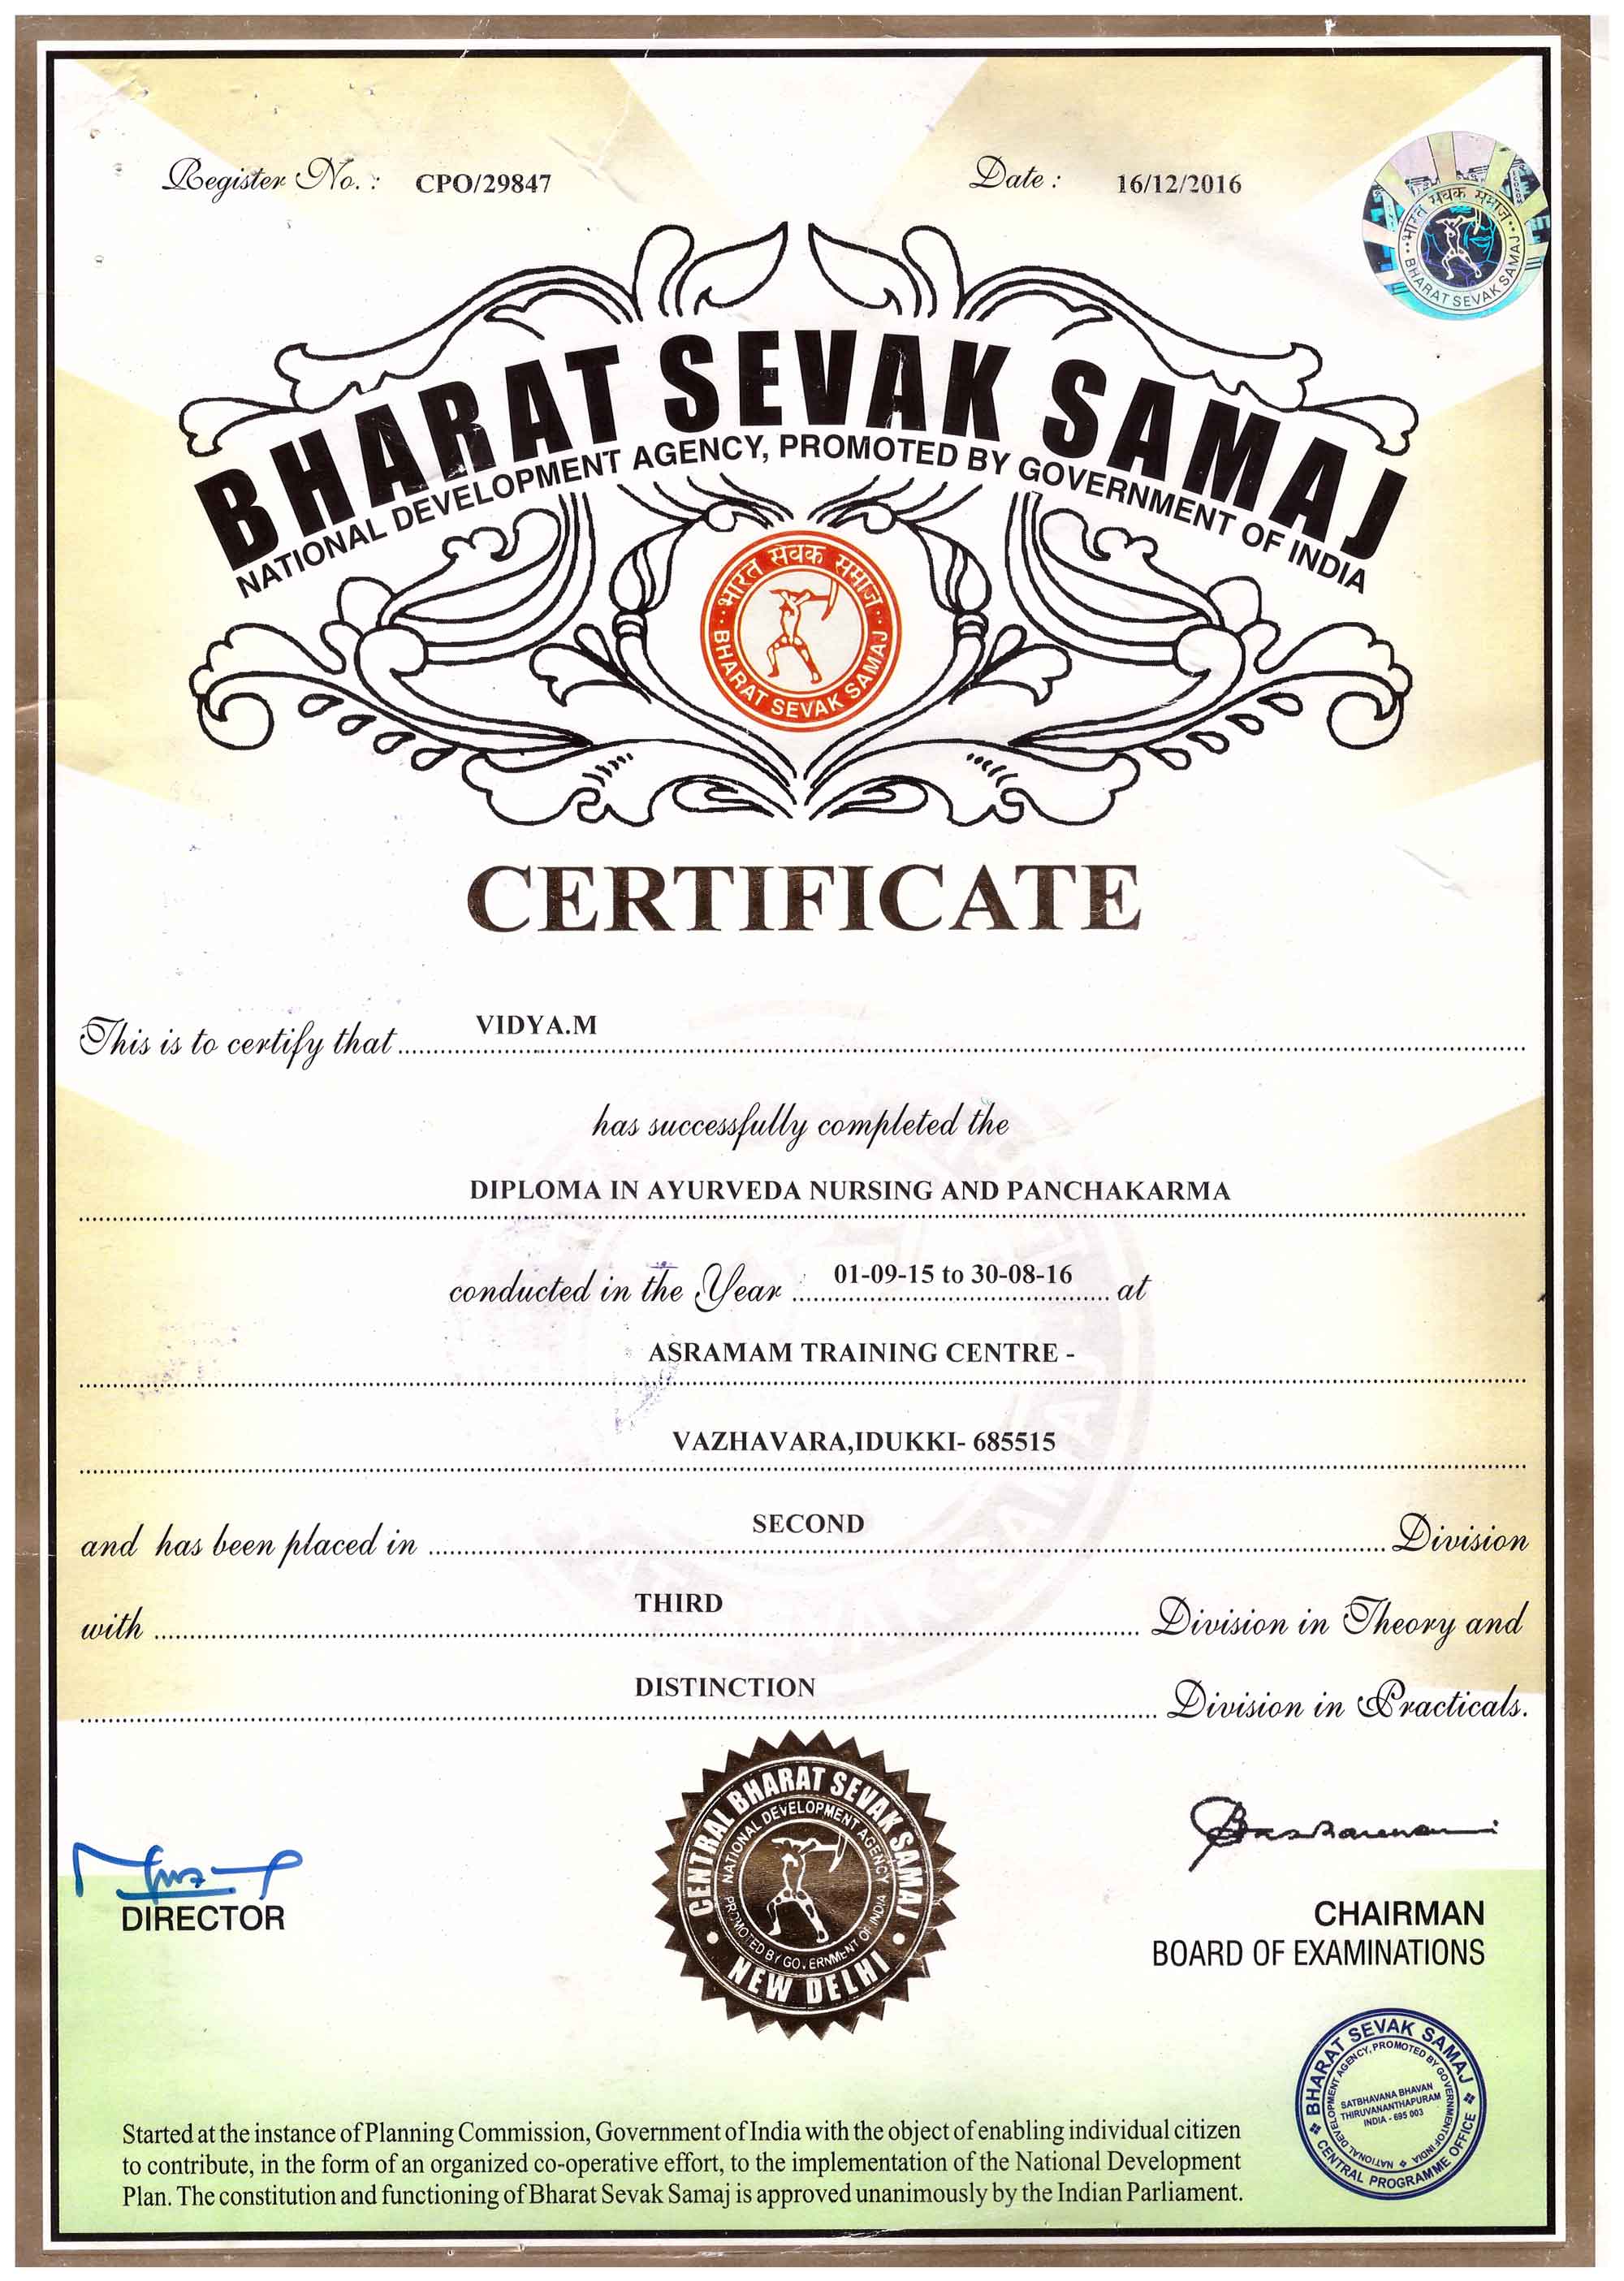 Сертификат "Аюрведический уход и терапия Панчакармы" Asramam Training Centre, Vazhavara, Idukki, Видья